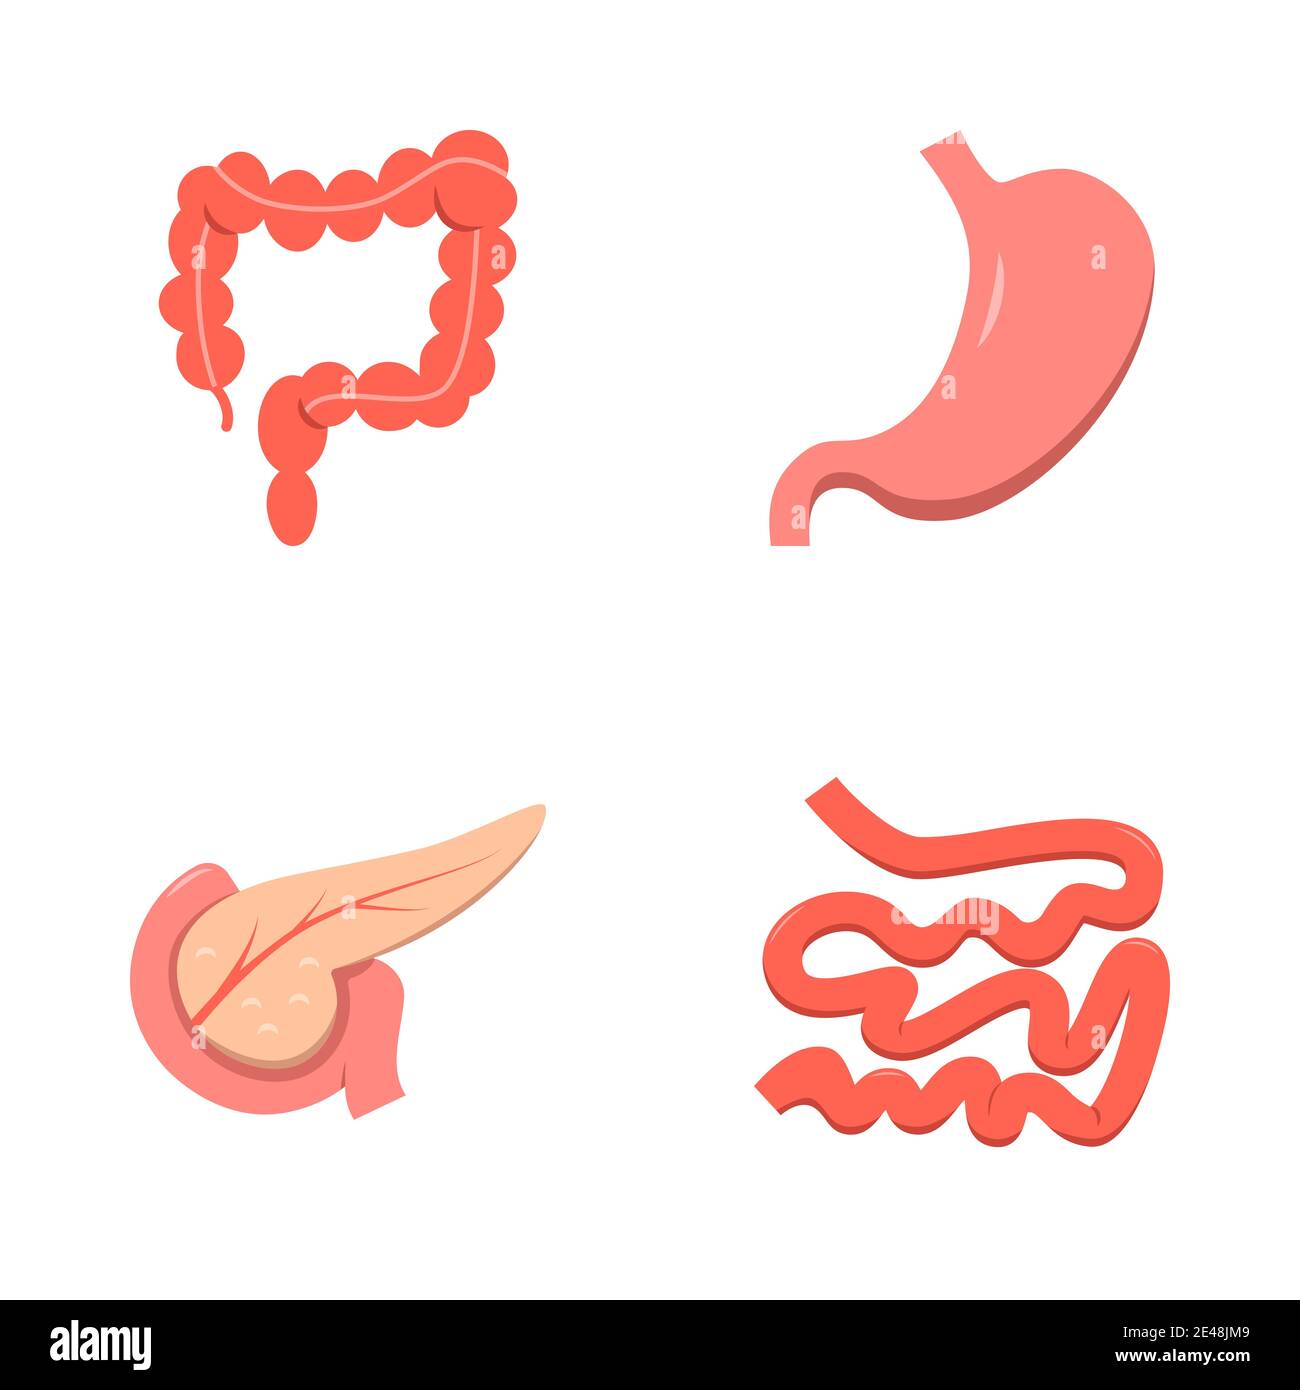 Icona del sistema digestivo in stile piatto. Piccoli e grandi intestini, stomaco e pankreas simboli. Organi interni umani. Illustrazione vettoriale. Illustrazione Vettoriale